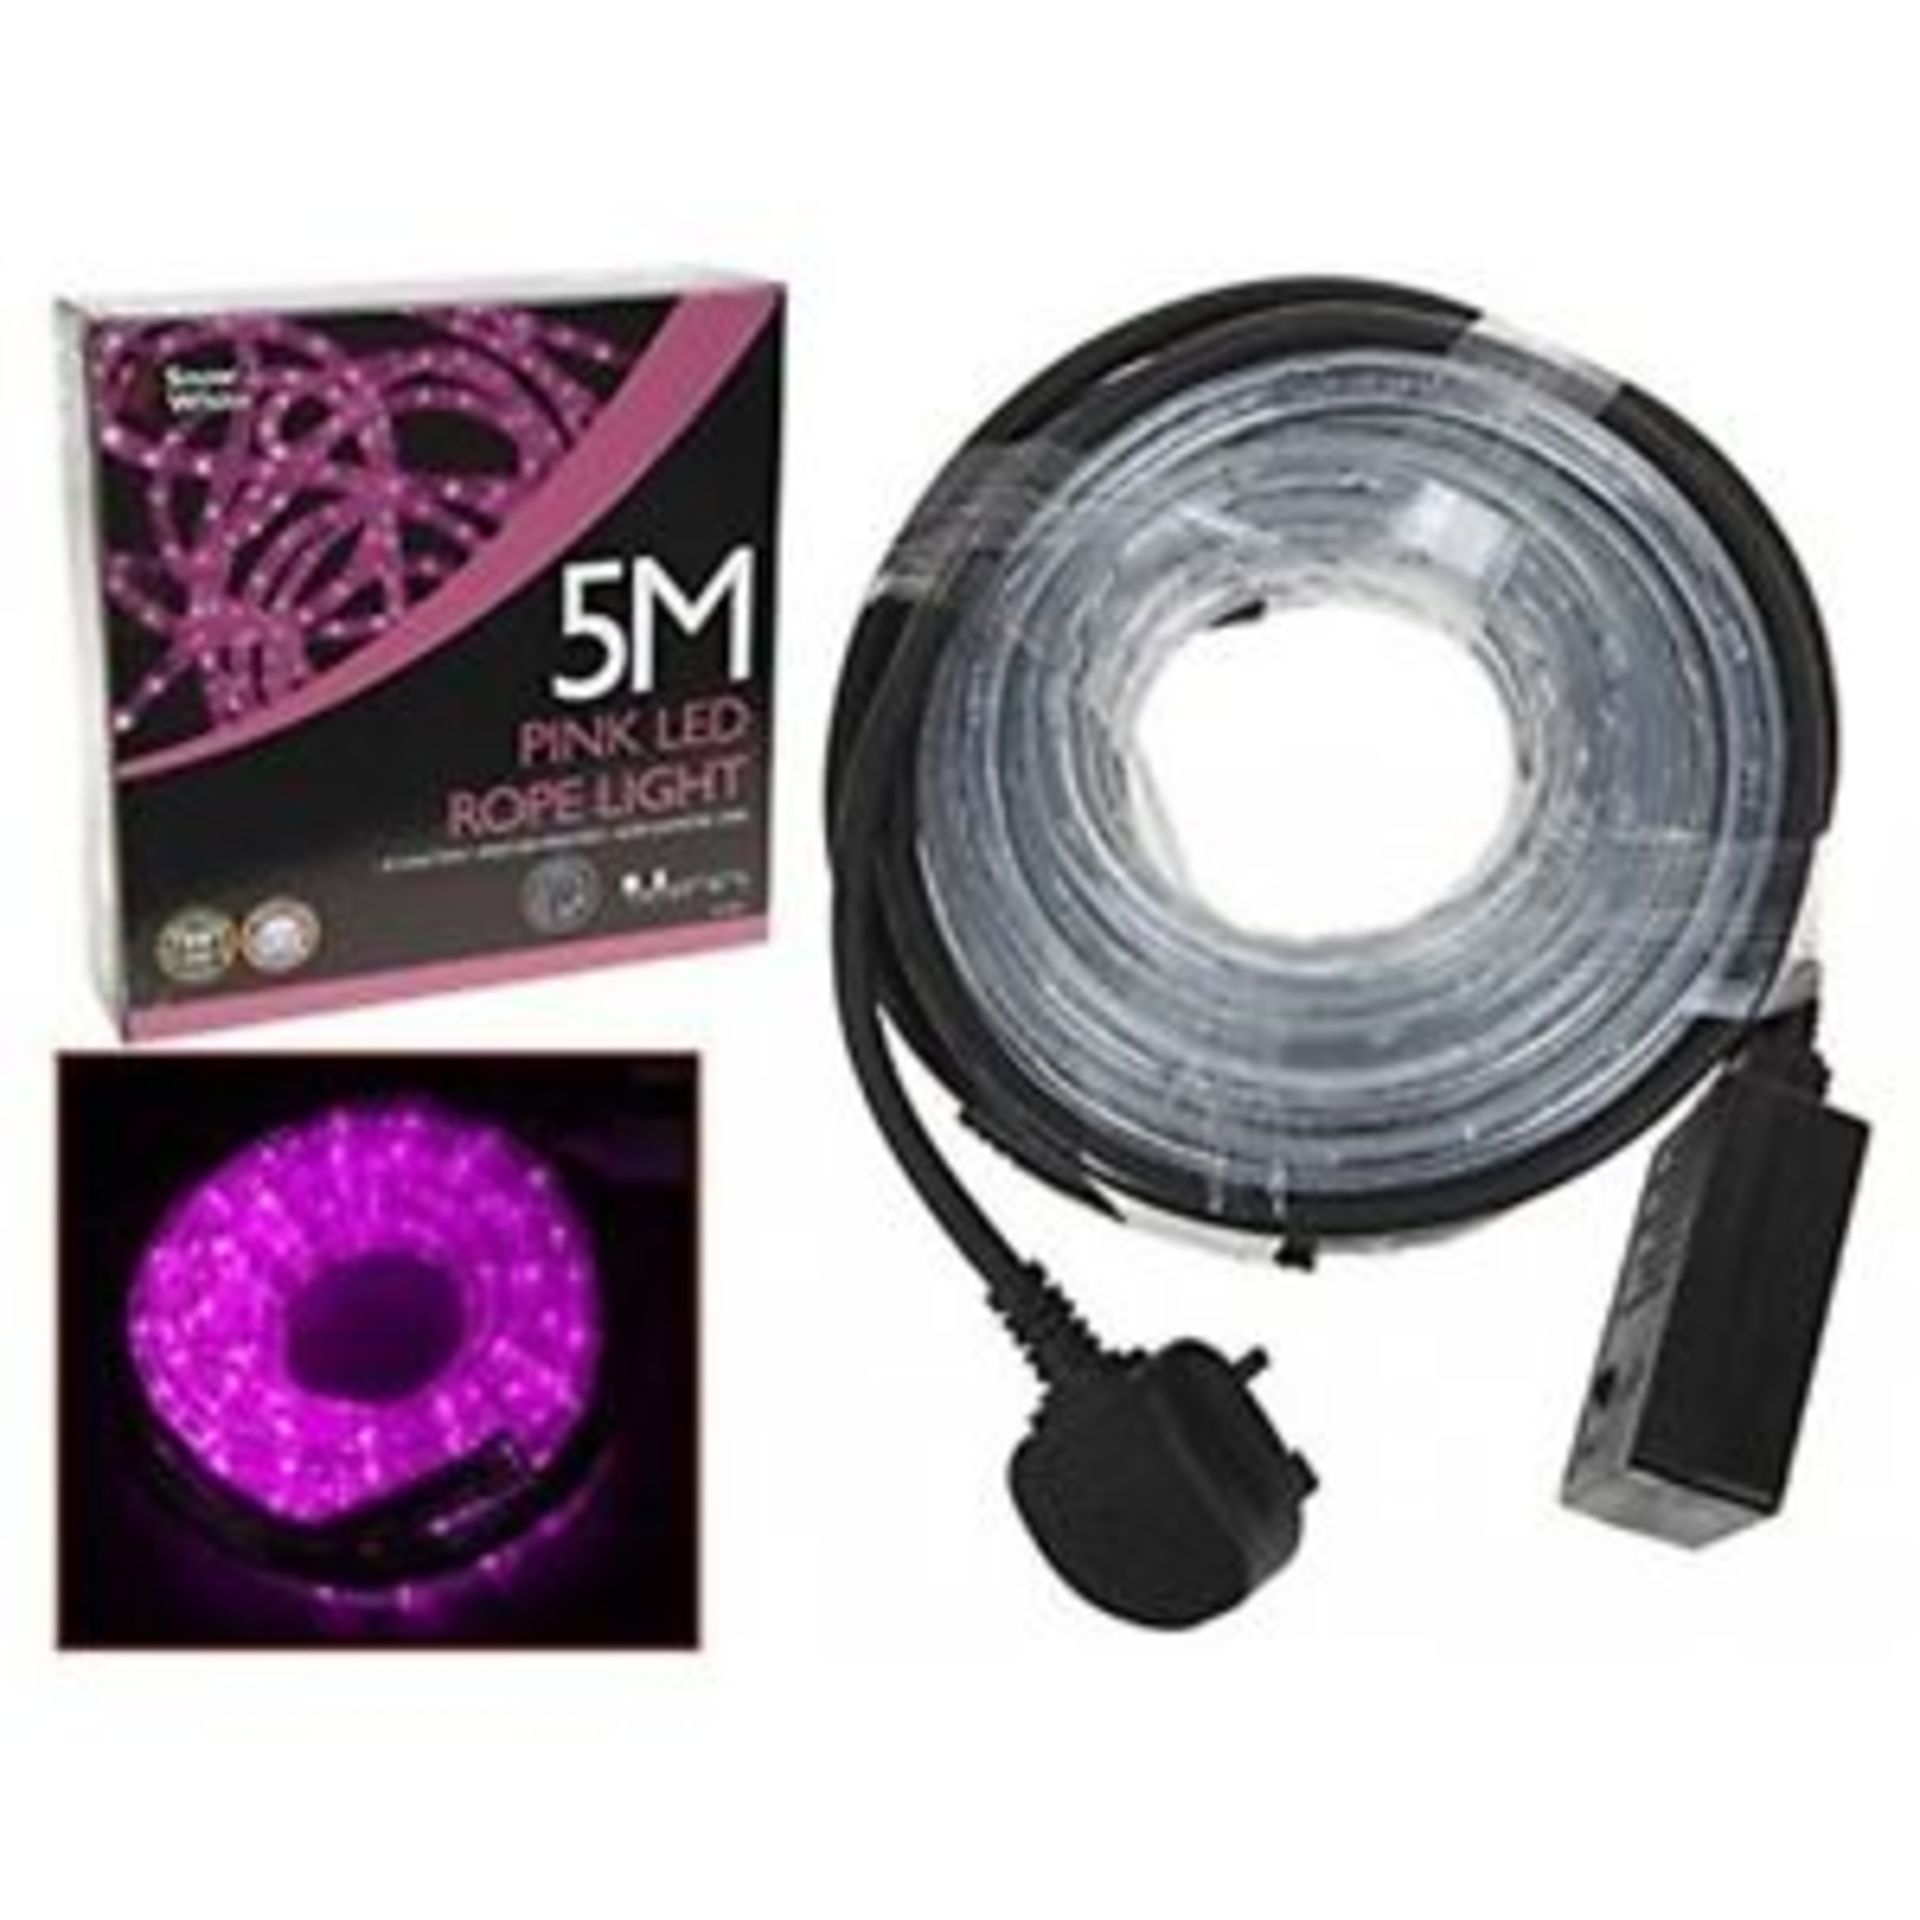 V Brand New 5M Multi Function Pink LED Rope Light